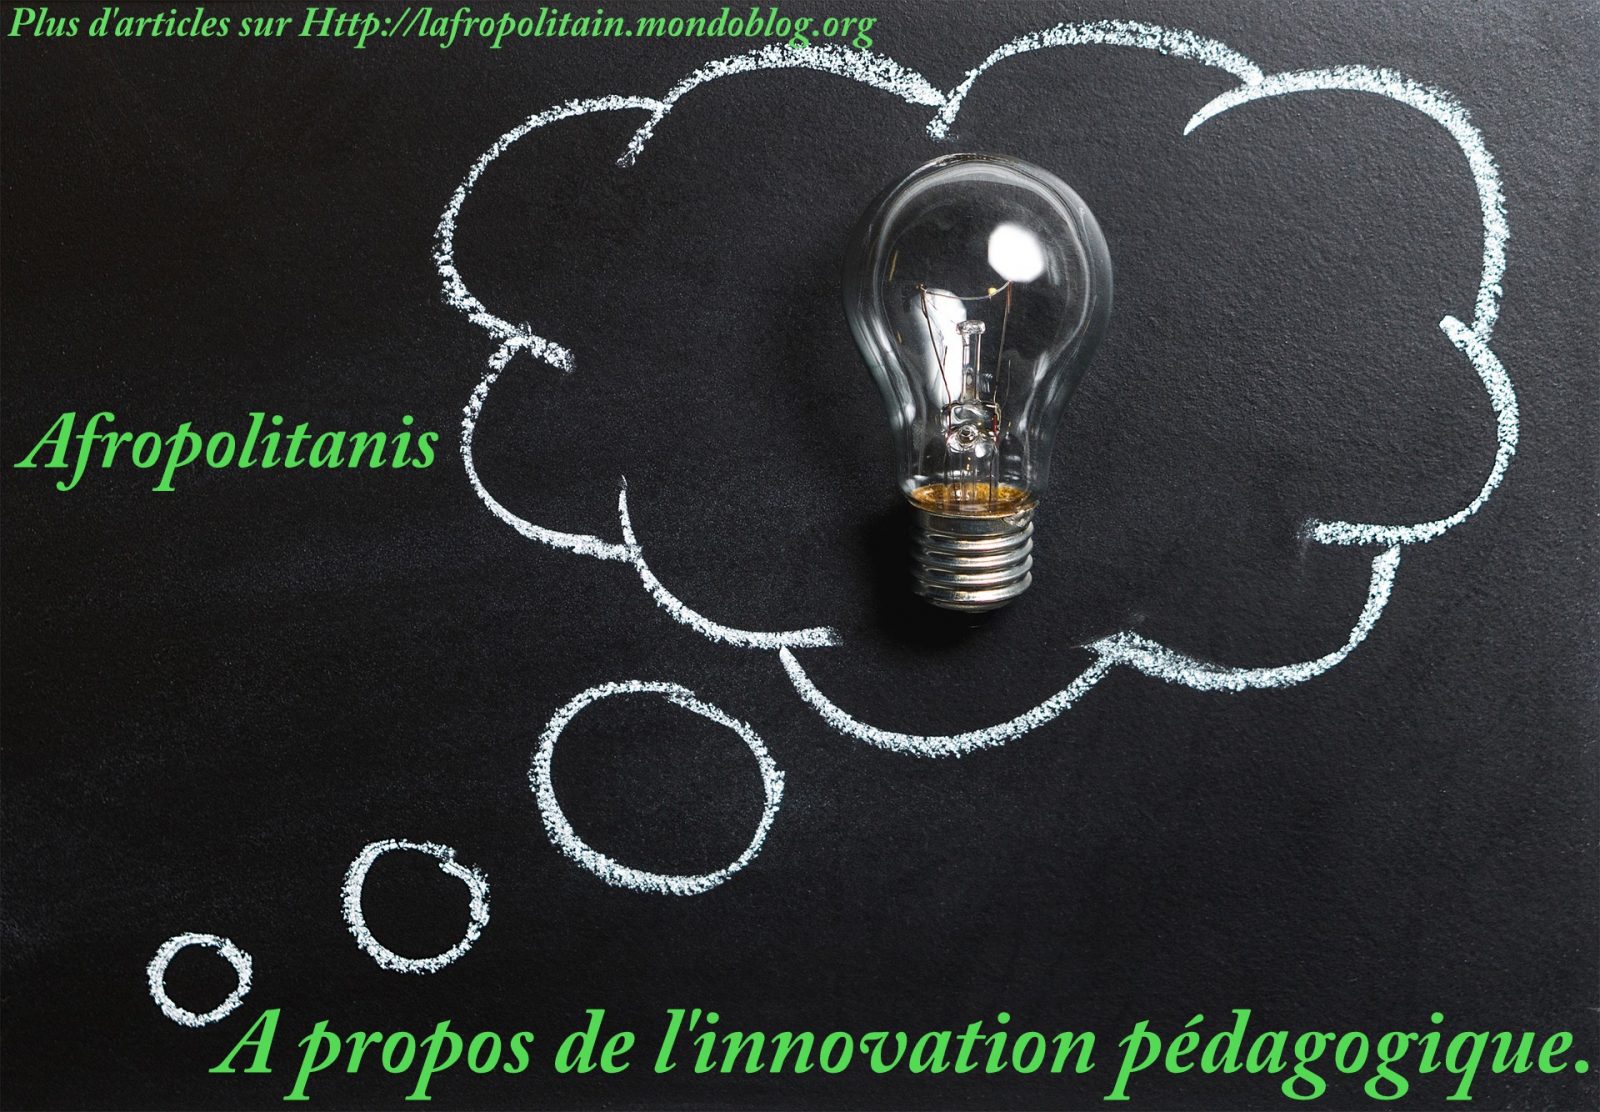 A propos de l'innovation pédagogique_Afropolitanis